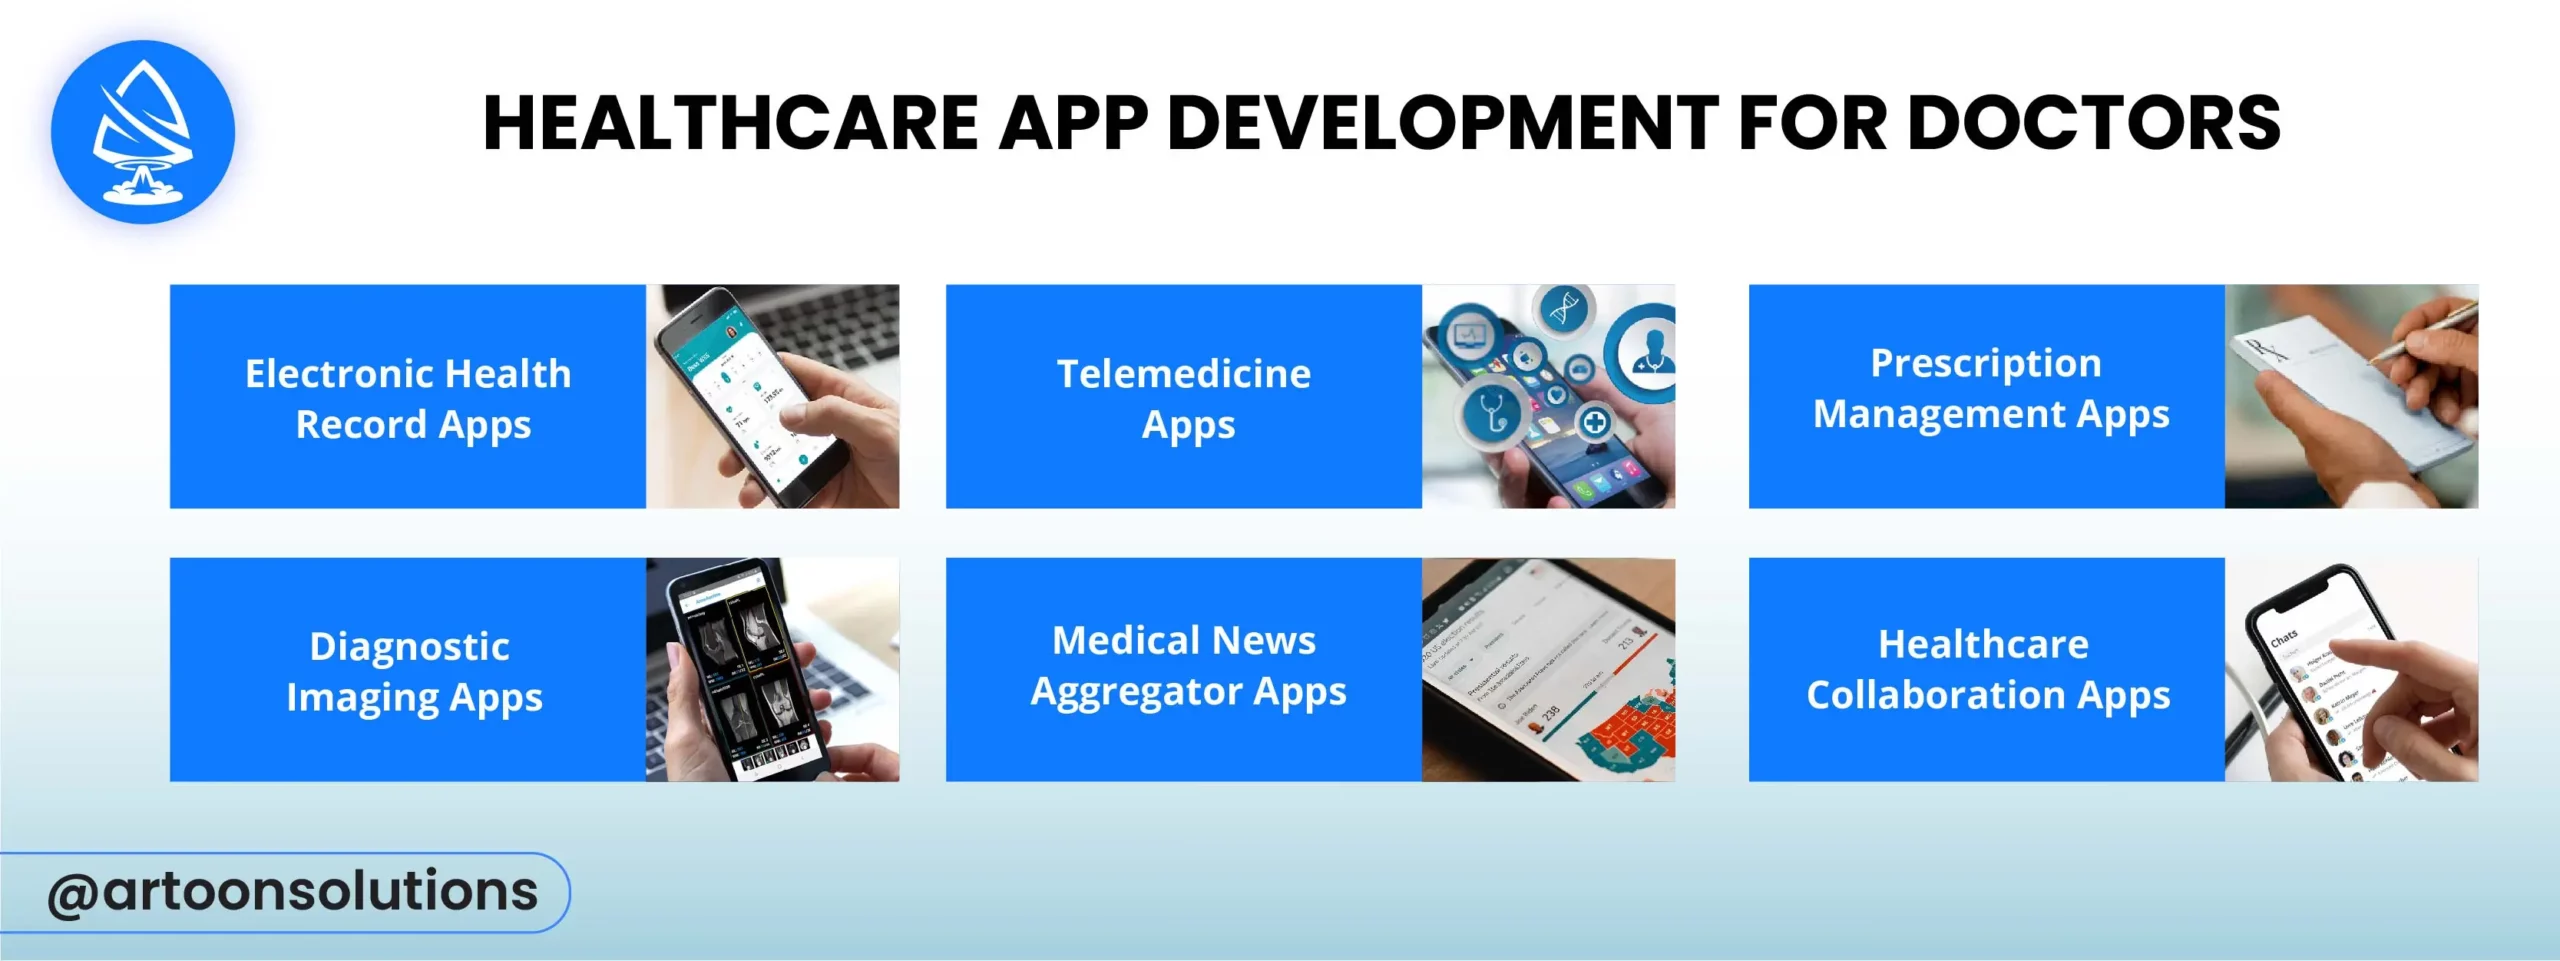 Healthcare App Development for Doctors